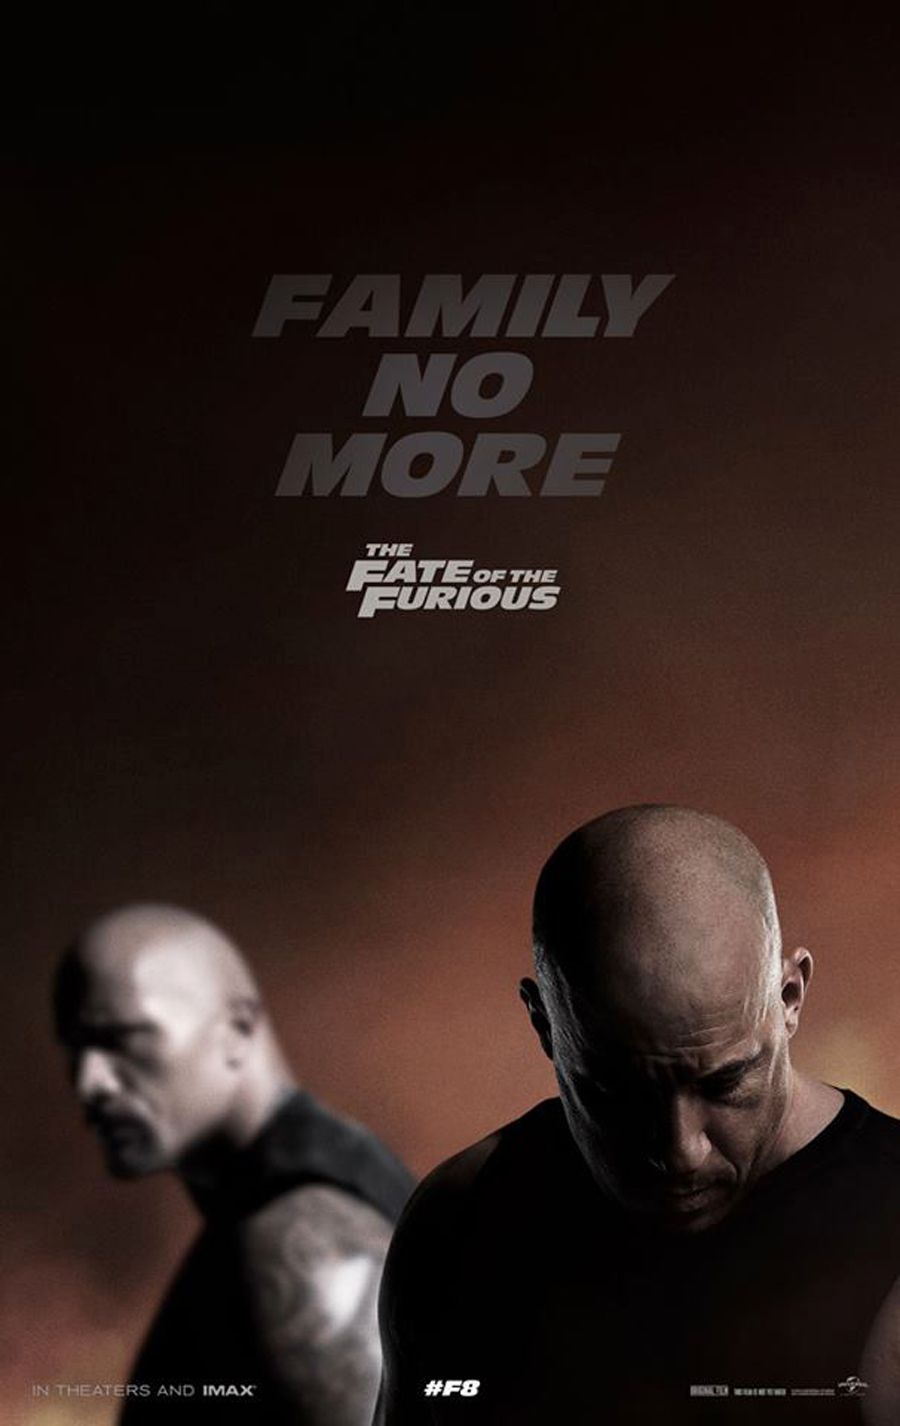 Nasib Poster Furious Menggoda 'Keluarga Tidak Lagi'